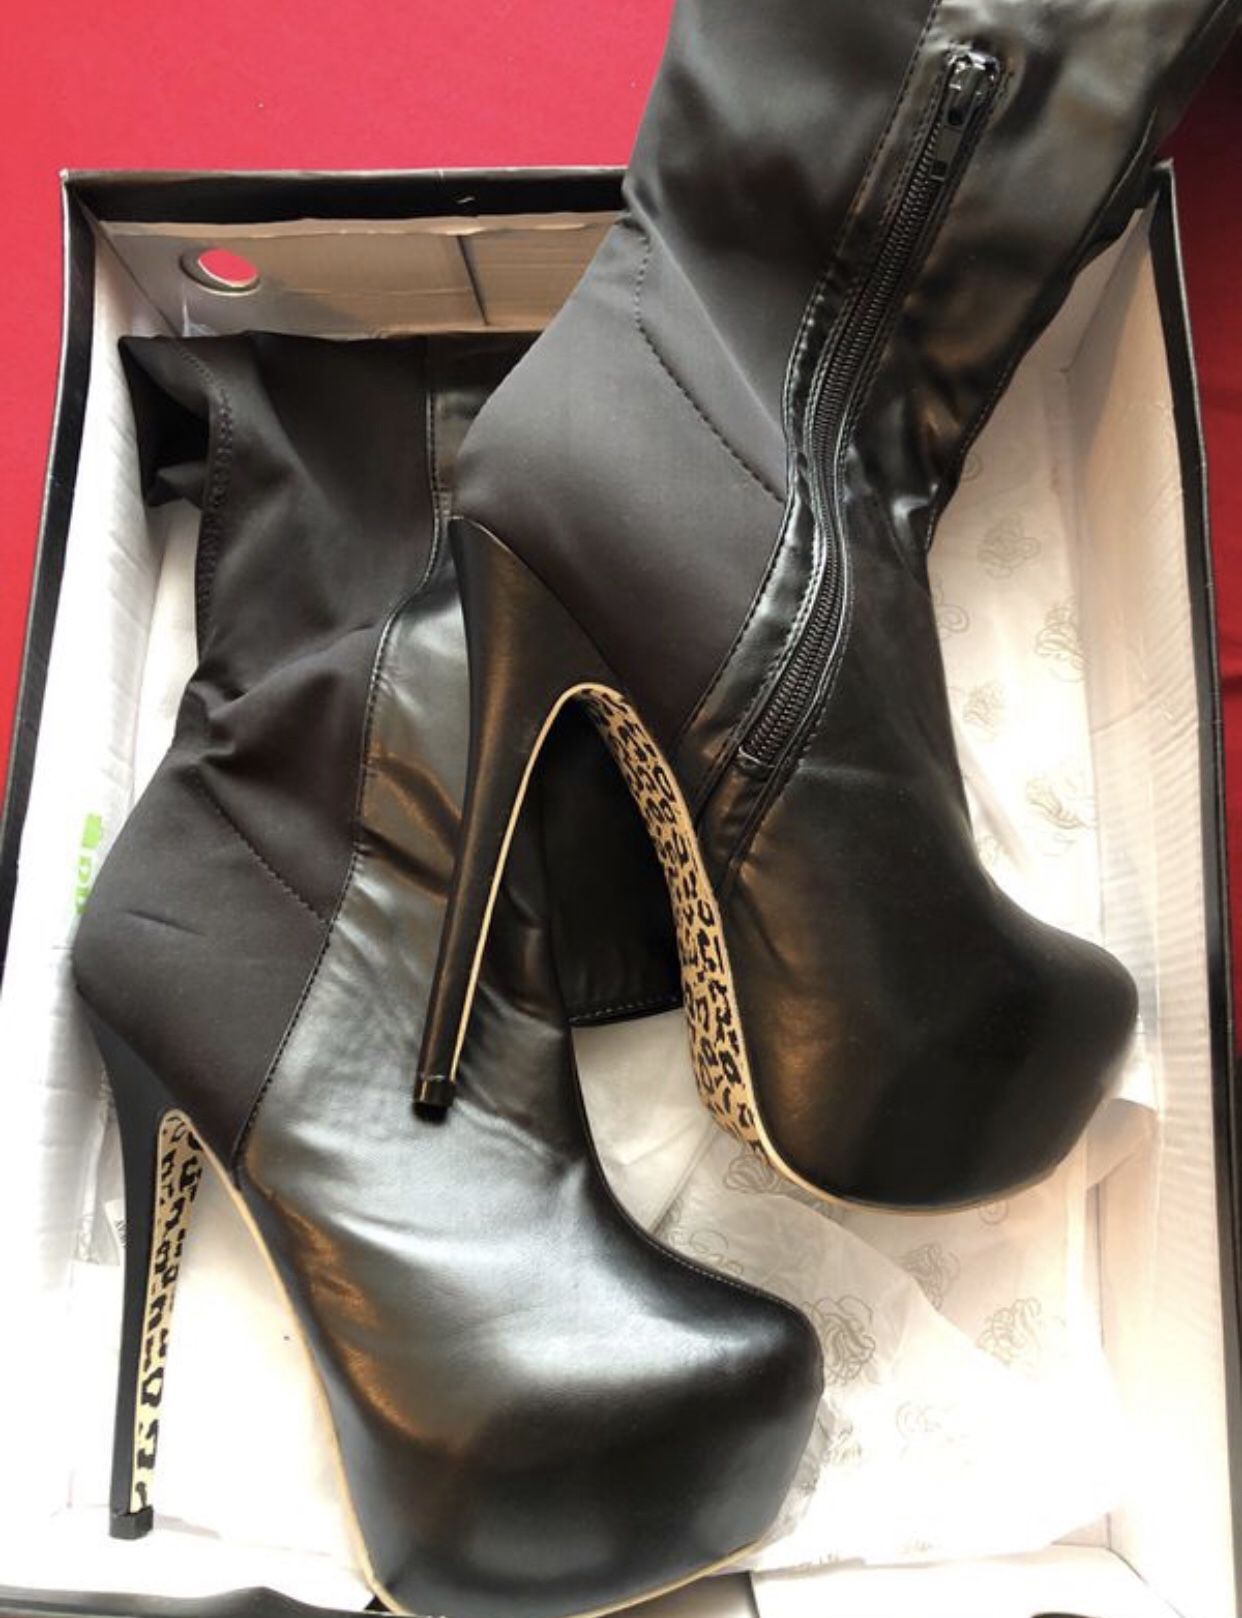 Women’s 8.5 heel boots